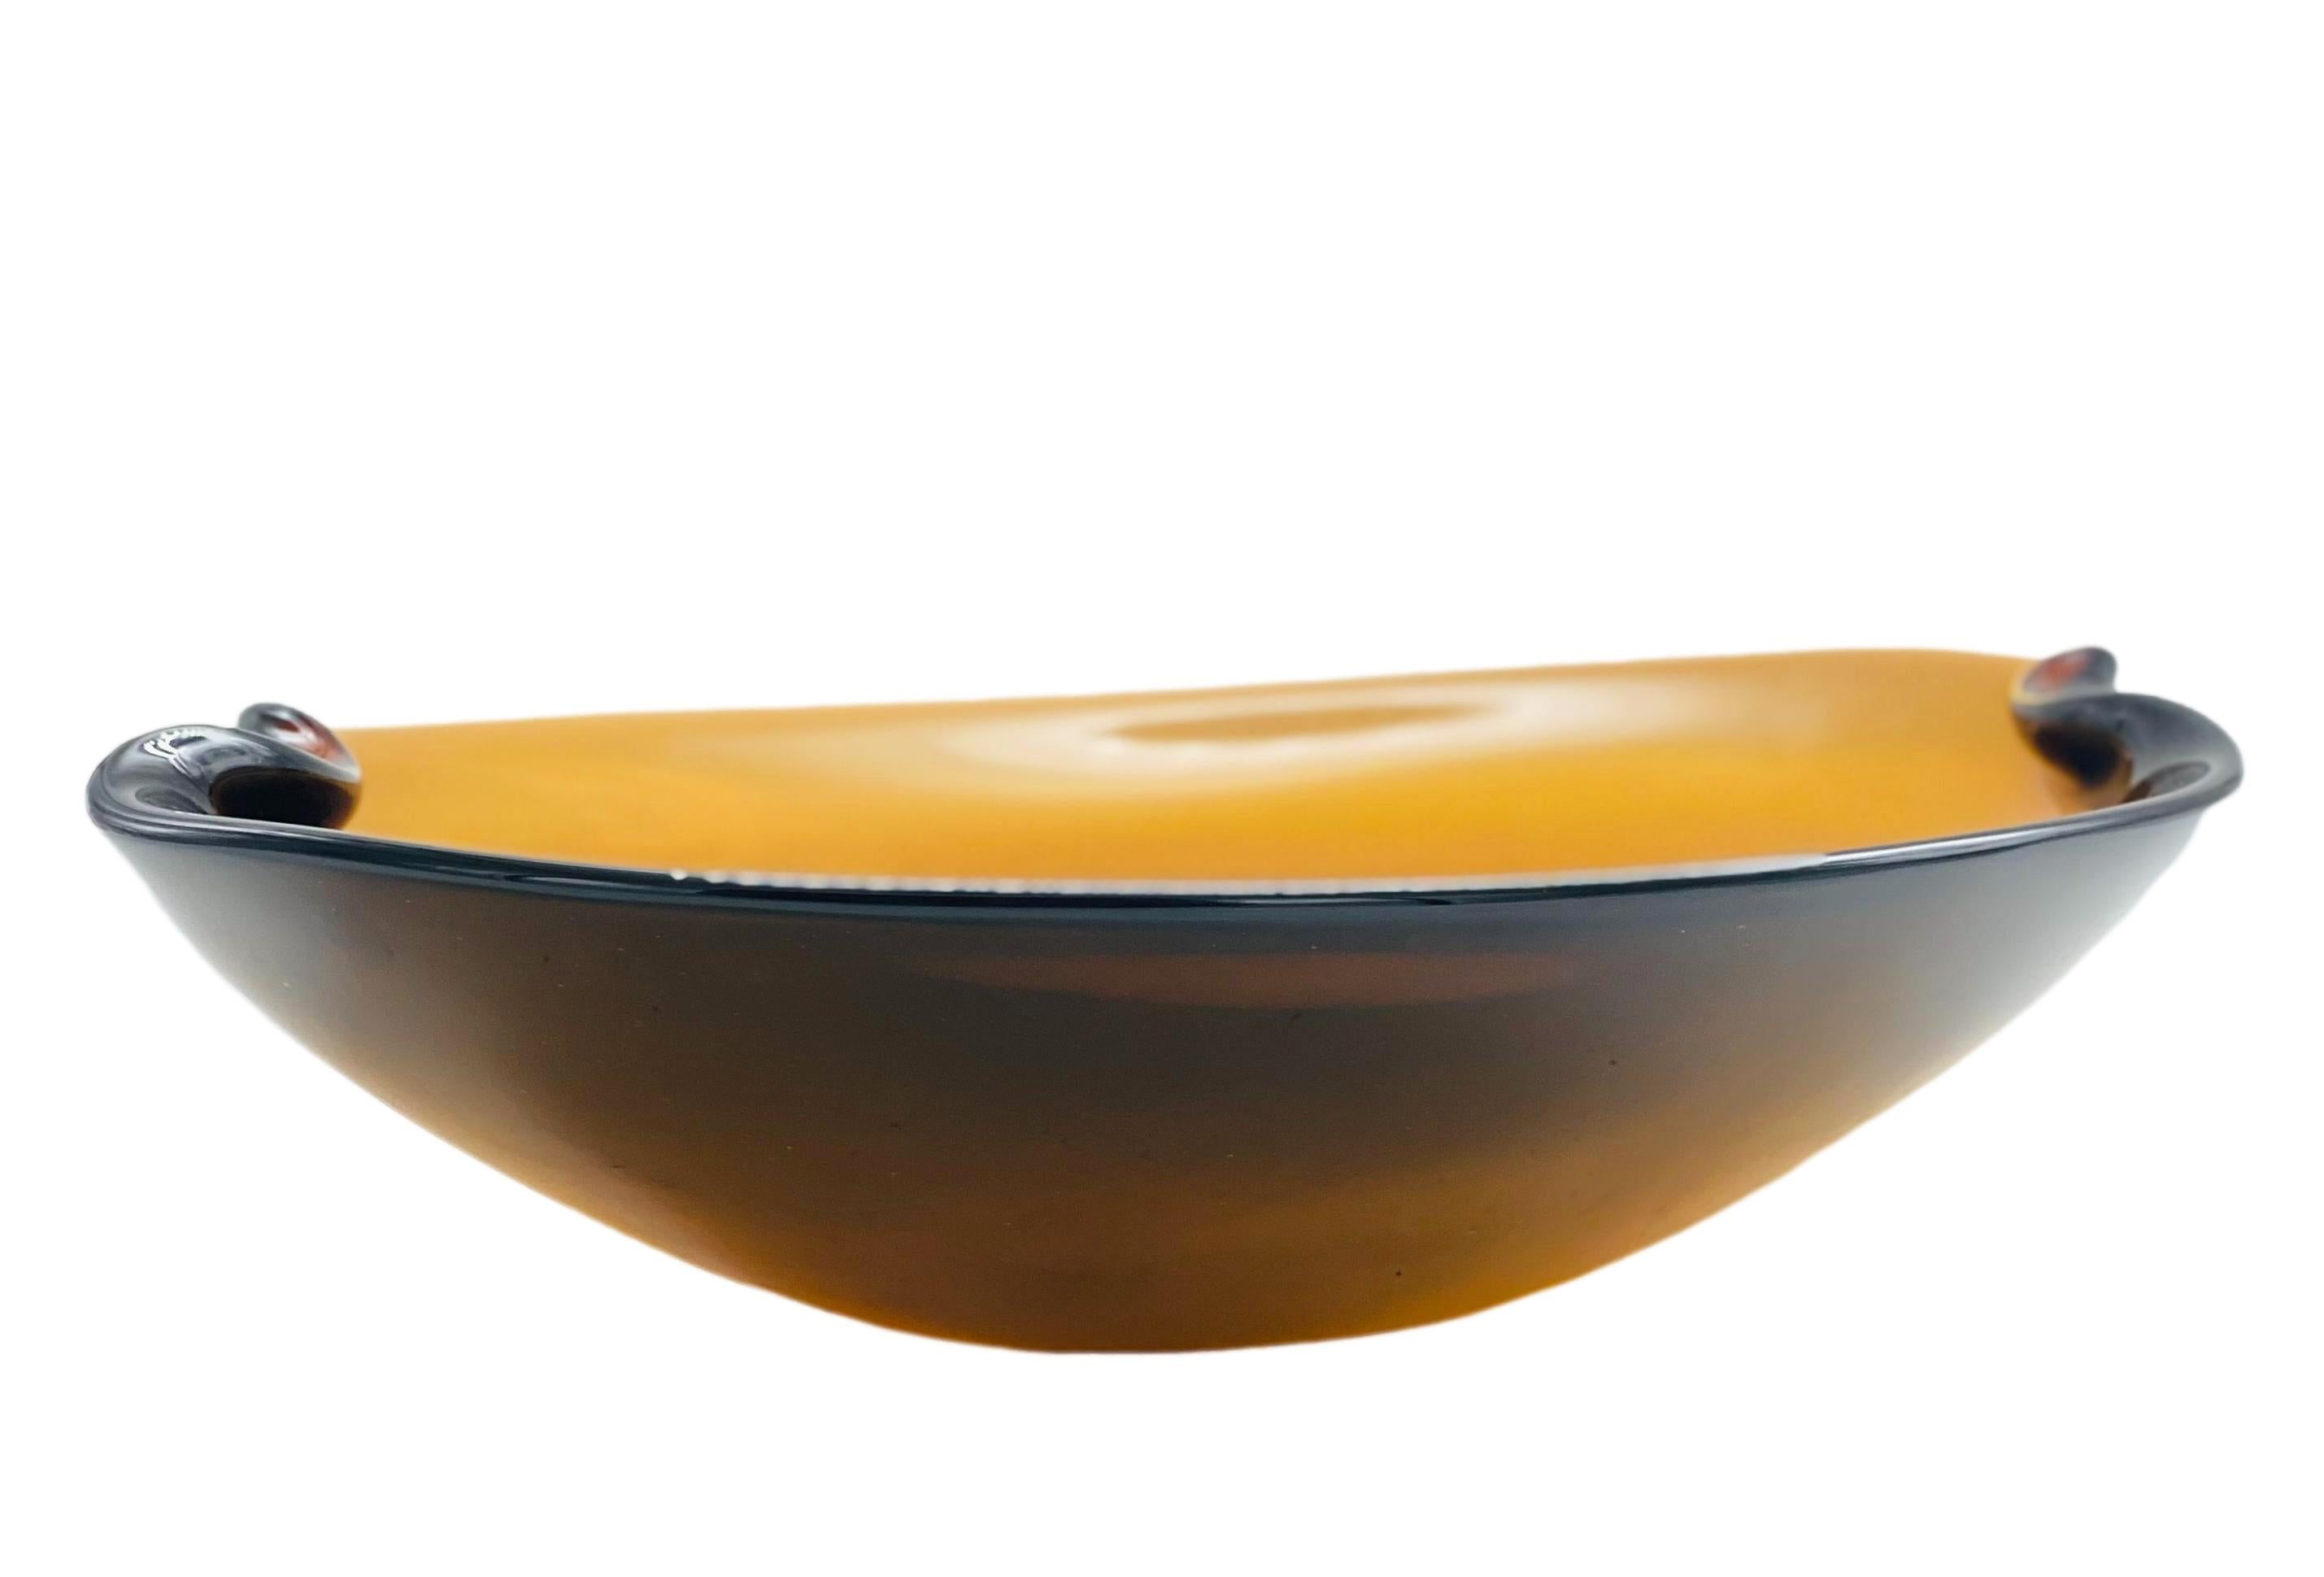 Rare and beautiful amber-coloured Murano glass centrepiece, design Flavio Poli for Seguso Vetri d'Arte, Italy 1960s
